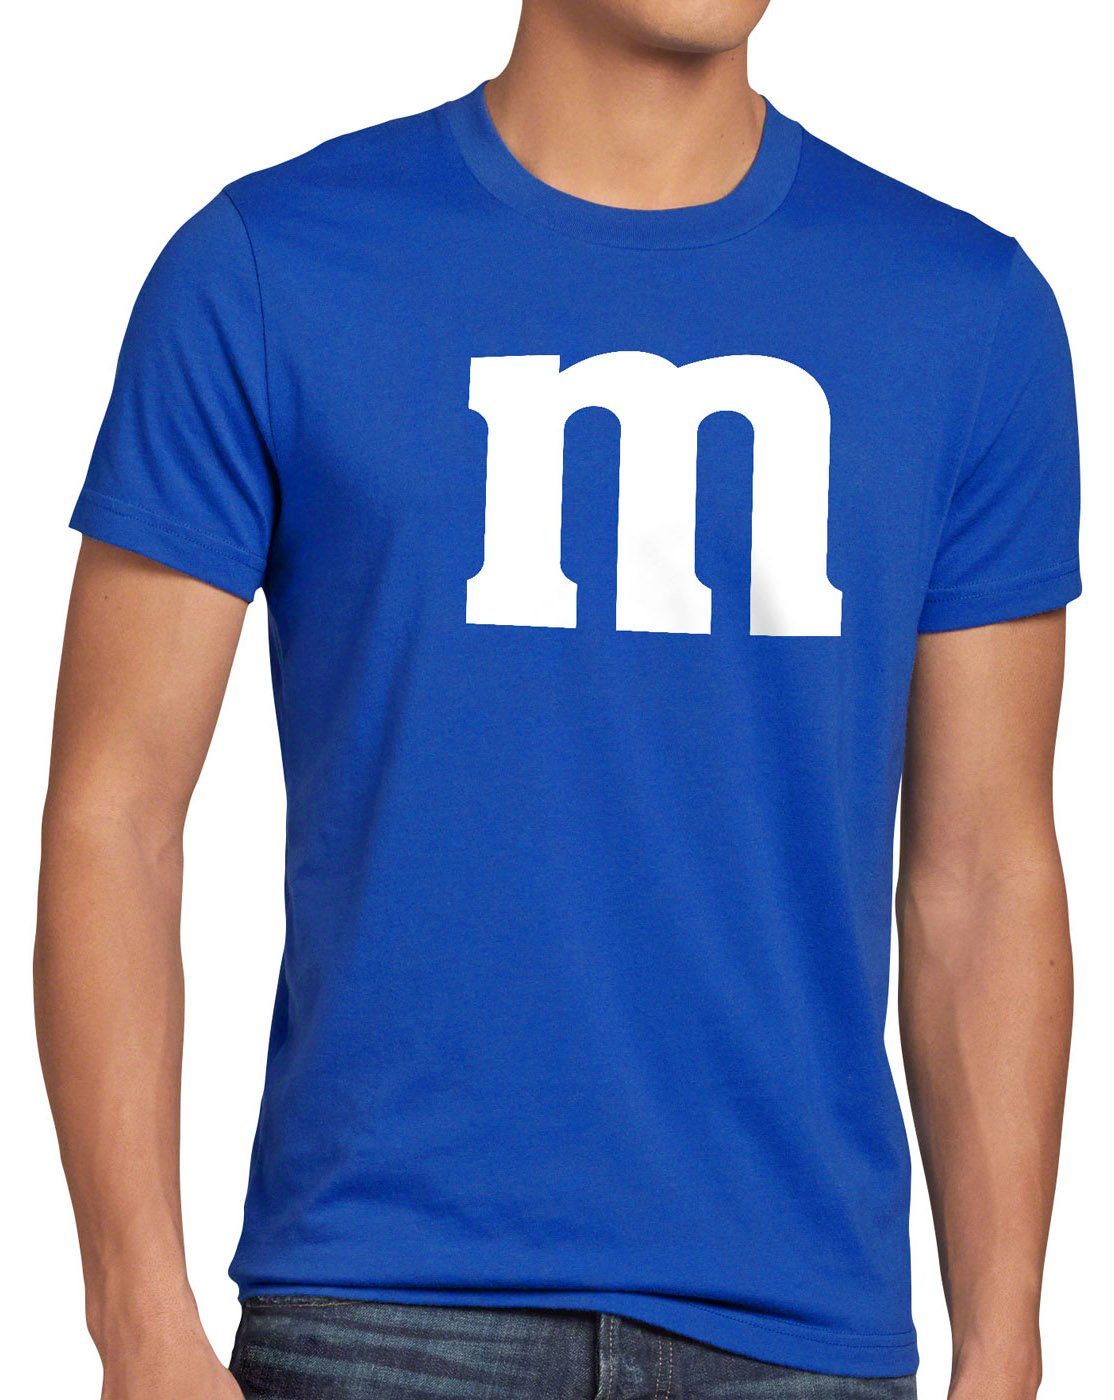 Gruppenkostüm blau style3 Herren Verkleidung Karneval T-Shirt Fun Print-Shirt Kostüm Fasching m Umzug